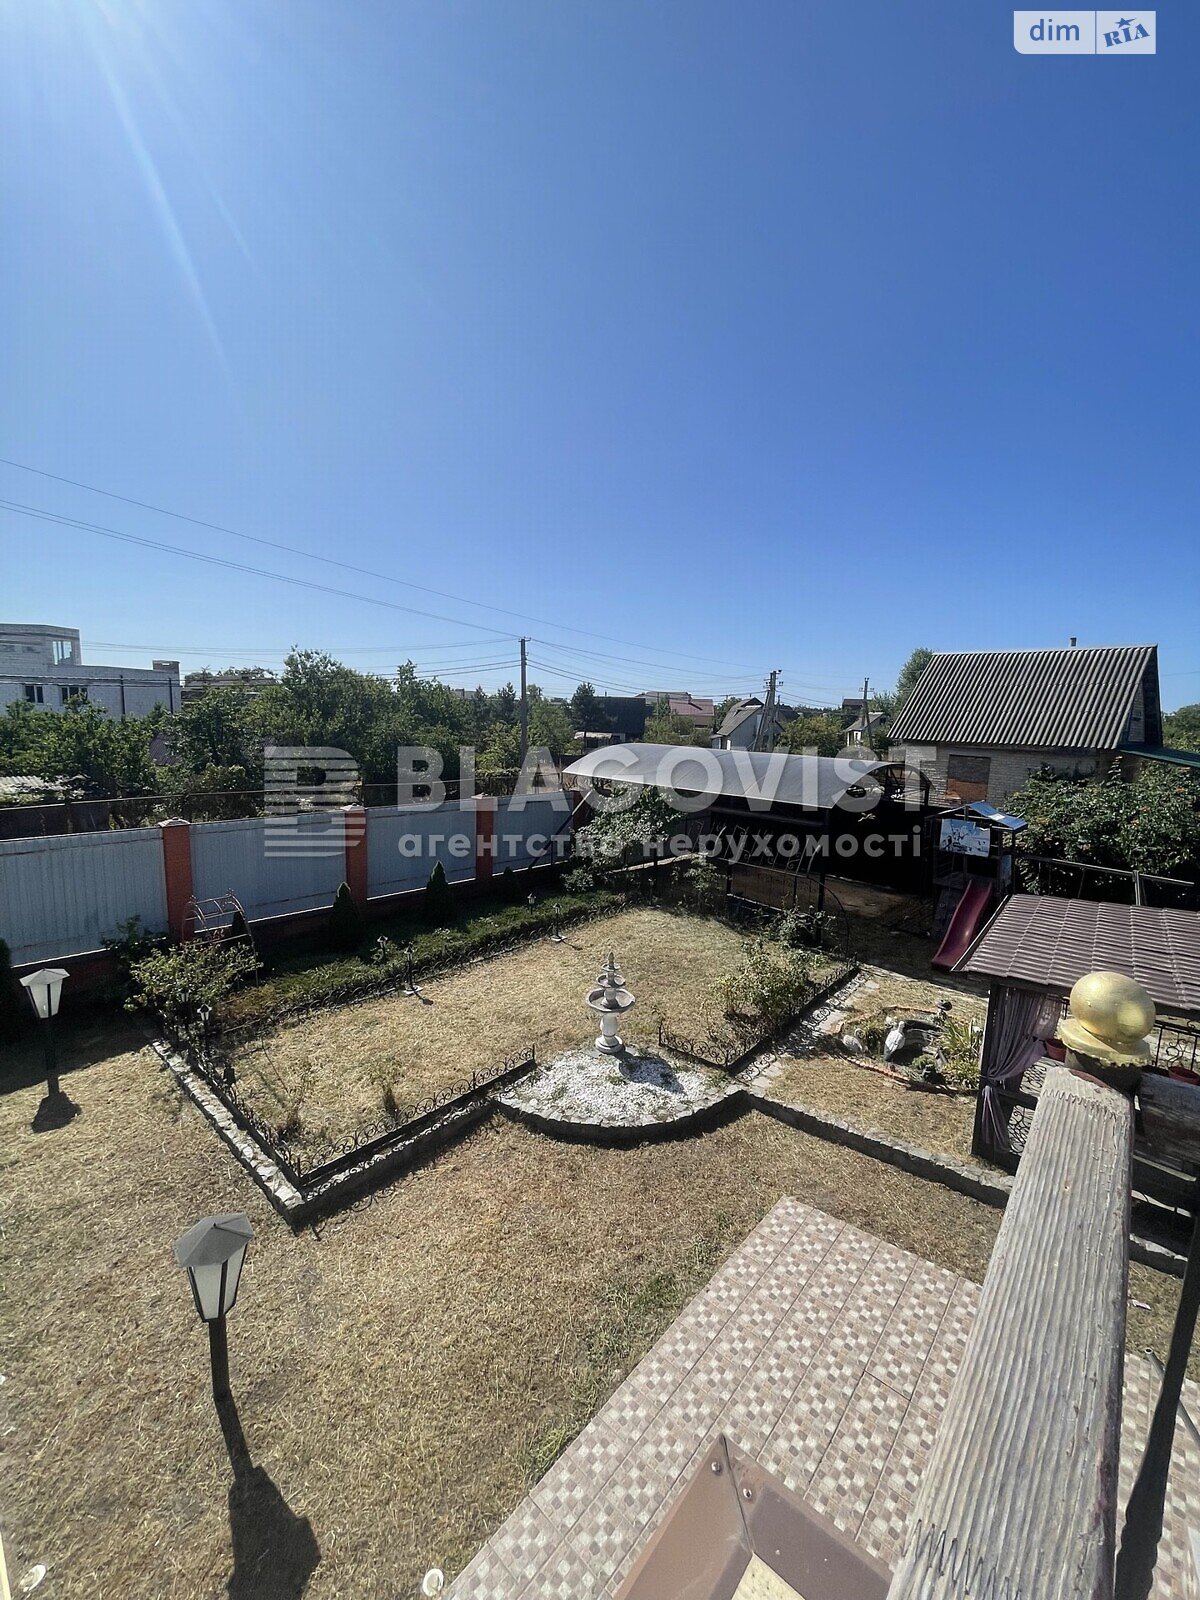 Продажа части дома в Новоселках, улица Киевская 20, 5 комнат фото 1